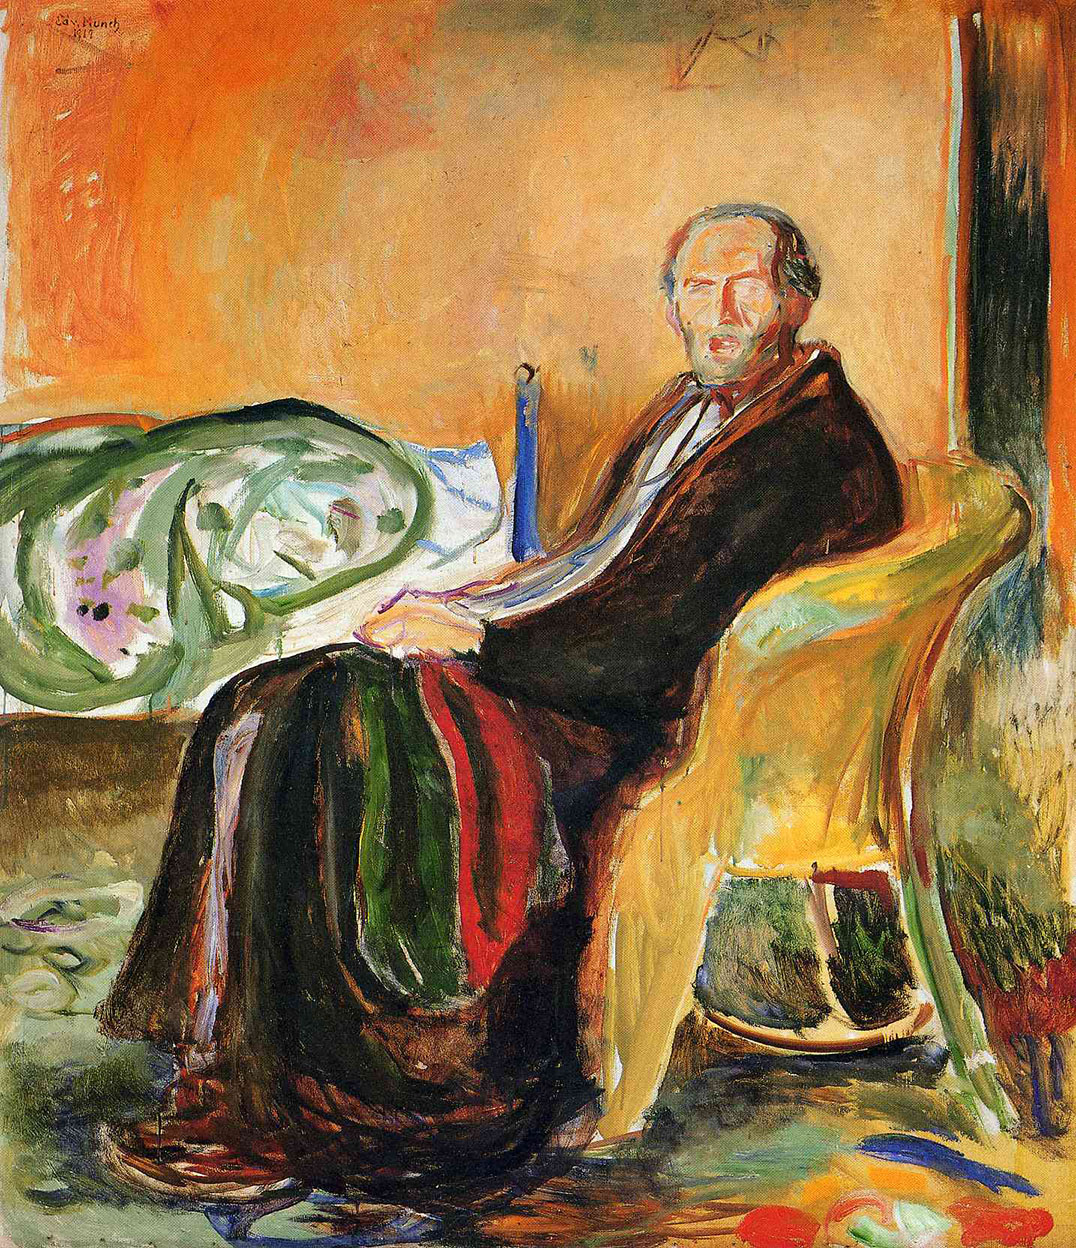 Эдвард Мунк. "Автопортрет после испанского гриппа". 1919. Национальная художественная галерея, Осло.